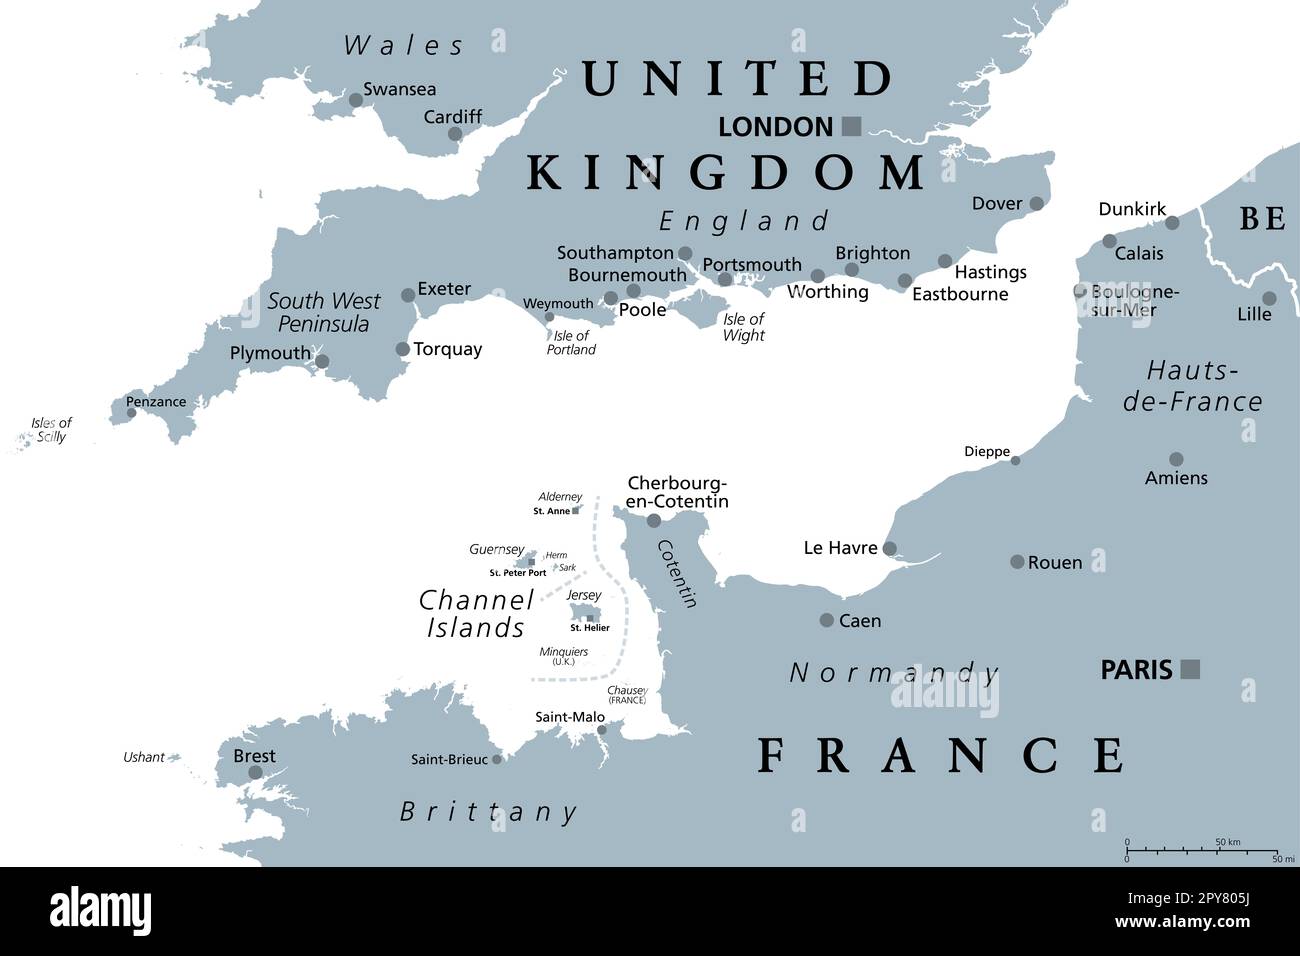 Englischer Kanal, graue politische Karte. British Channel, Arm des Atlantischen Ozeans, trennt England von Frankreich. Belebteste Versandzone der Welt. Stockfoto